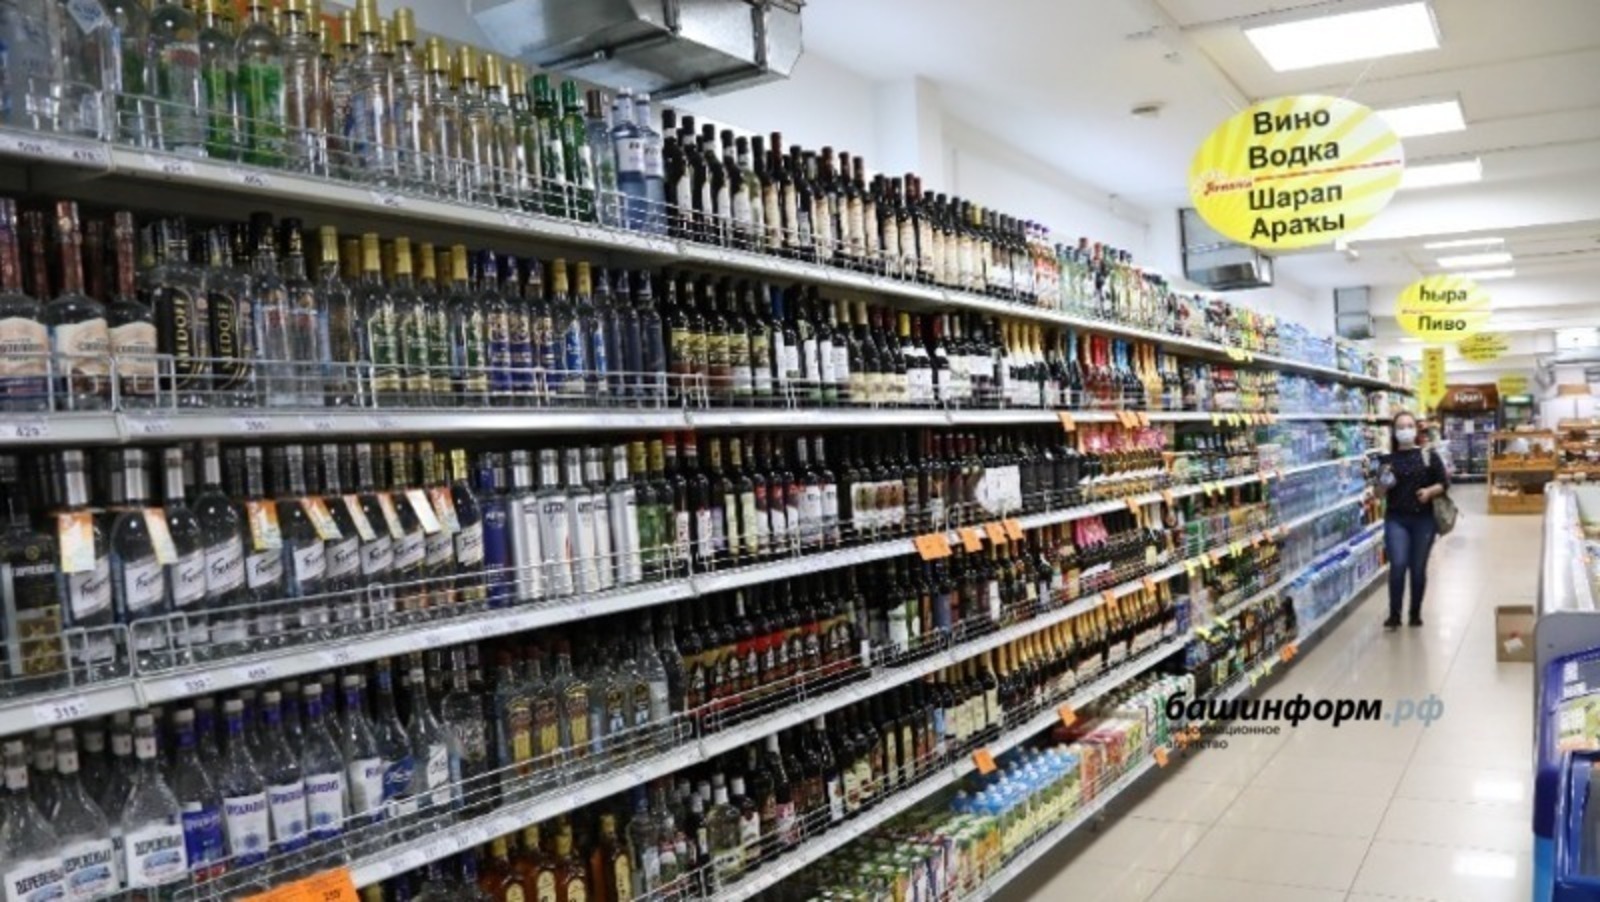 Алкоголь в магазинах Башкортостана продаваться не будет